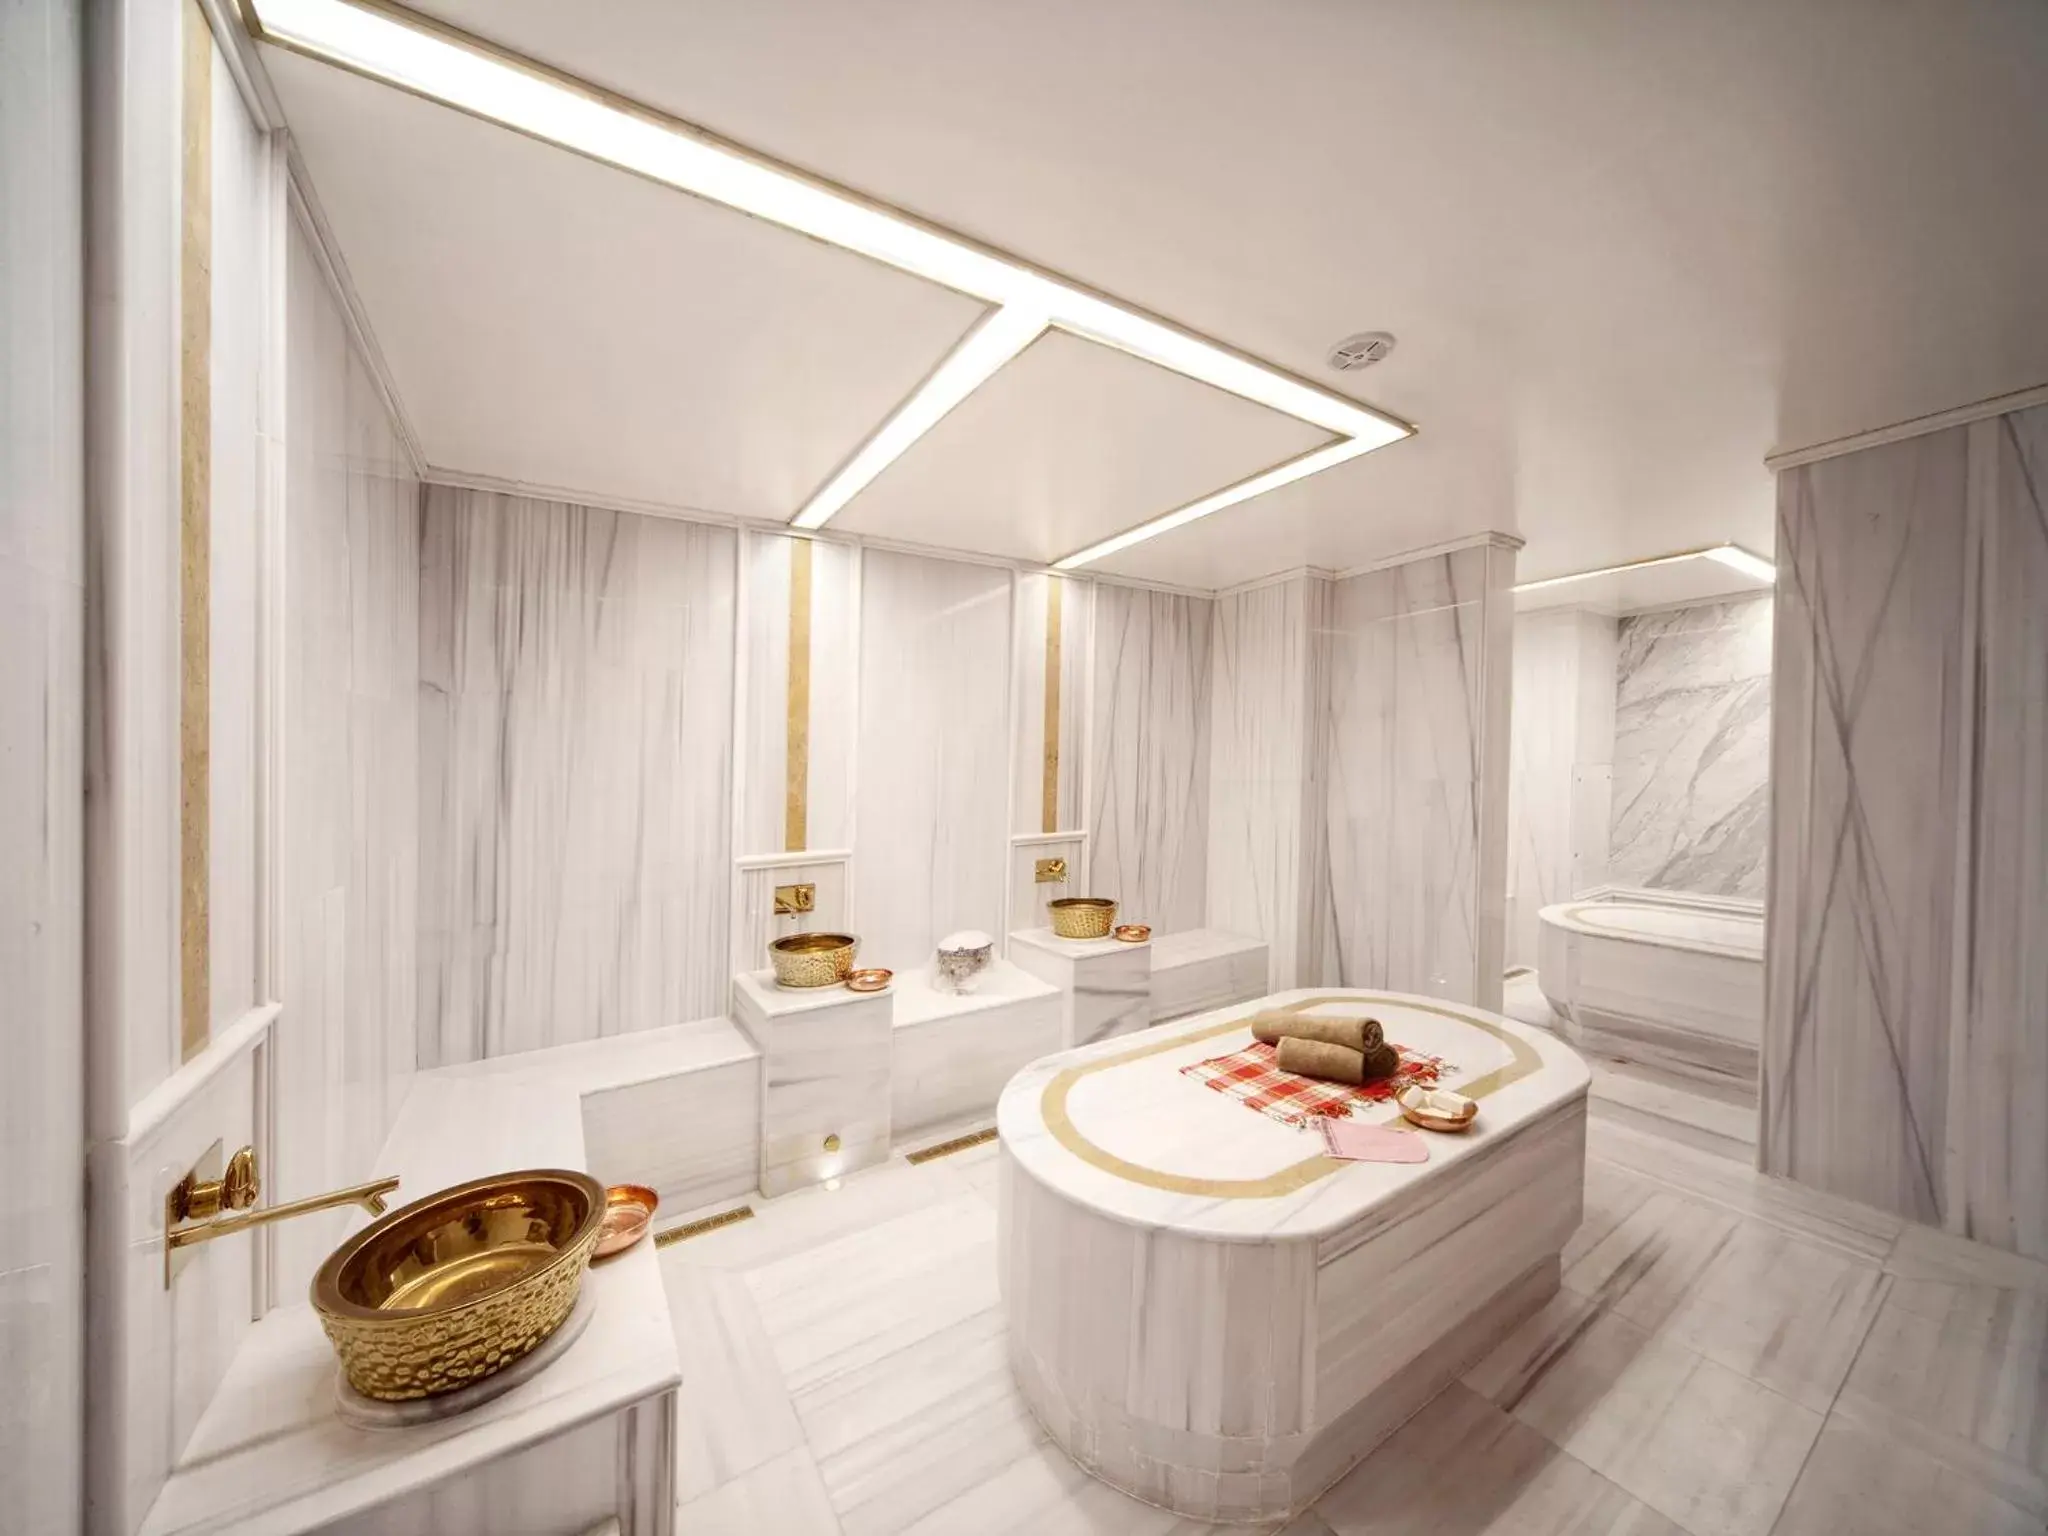 Public Bath, Bathroom in Grand Hotel de Pera